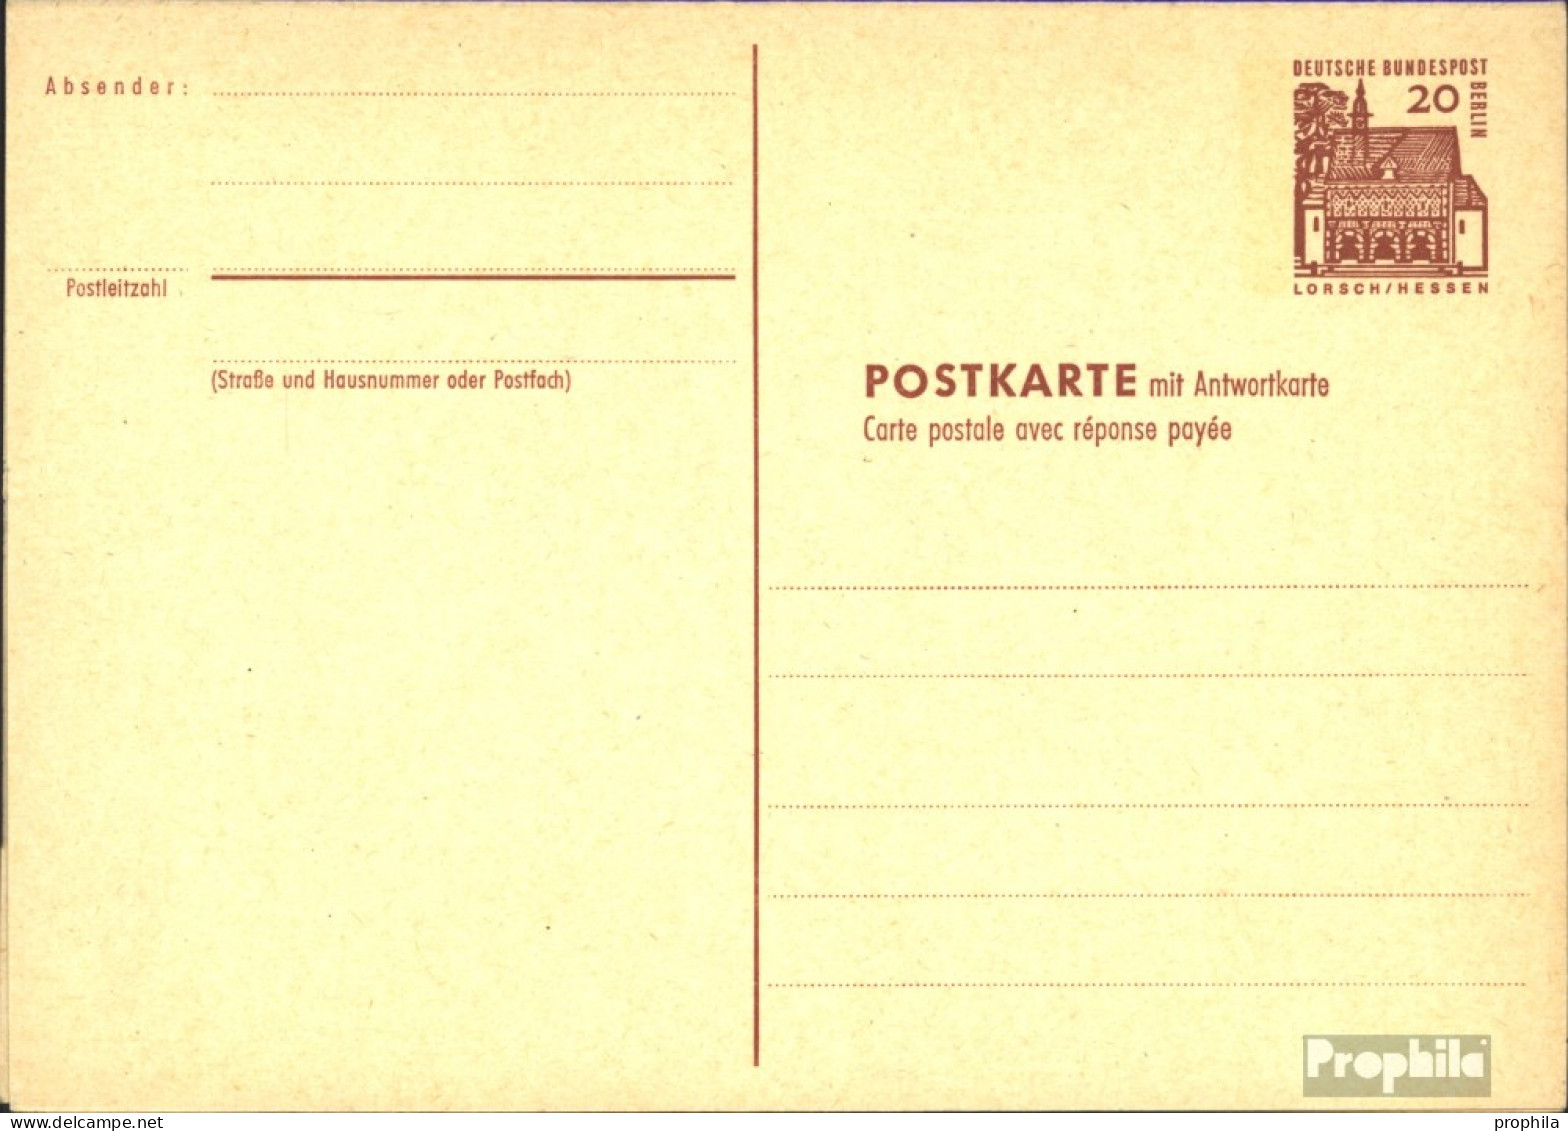 Berlin (West) P67 Amtliche Postkarte Gefälligkeitsgestempelt Gebraucht 1965 Dt. Bauwerke I - Cartoline - Usati